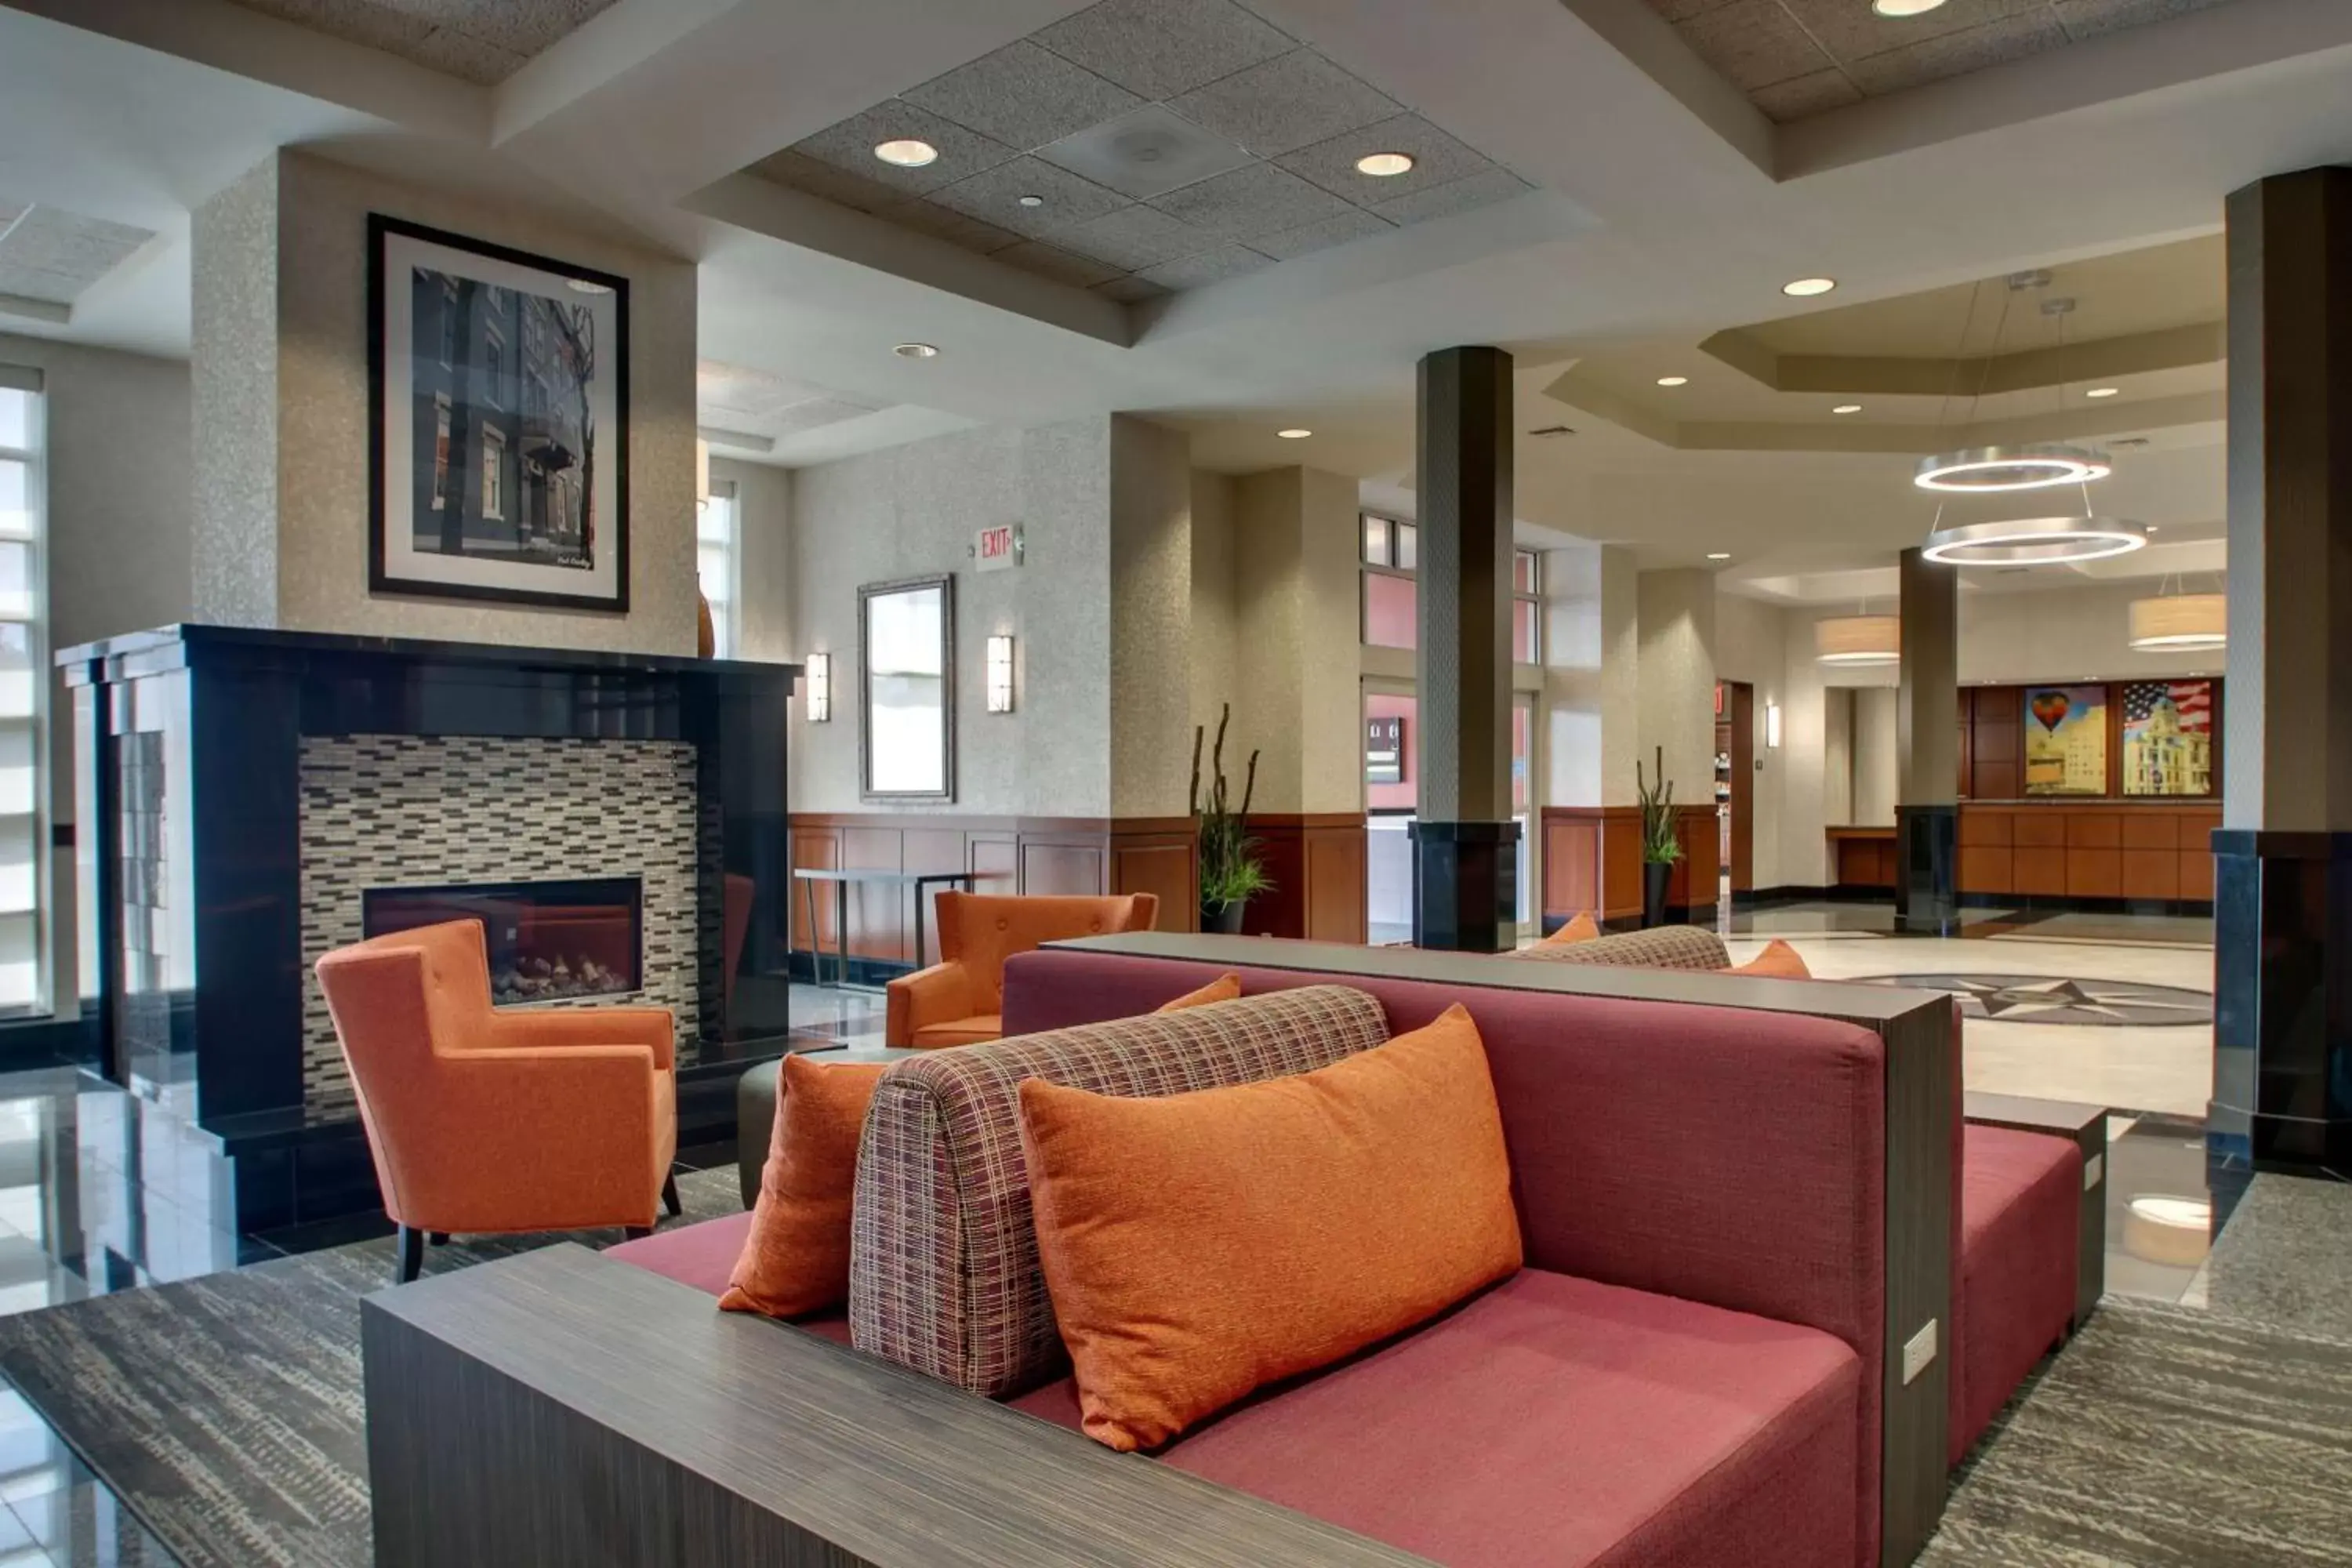 Lobby or reception in Drury Inn & Suites Findlay